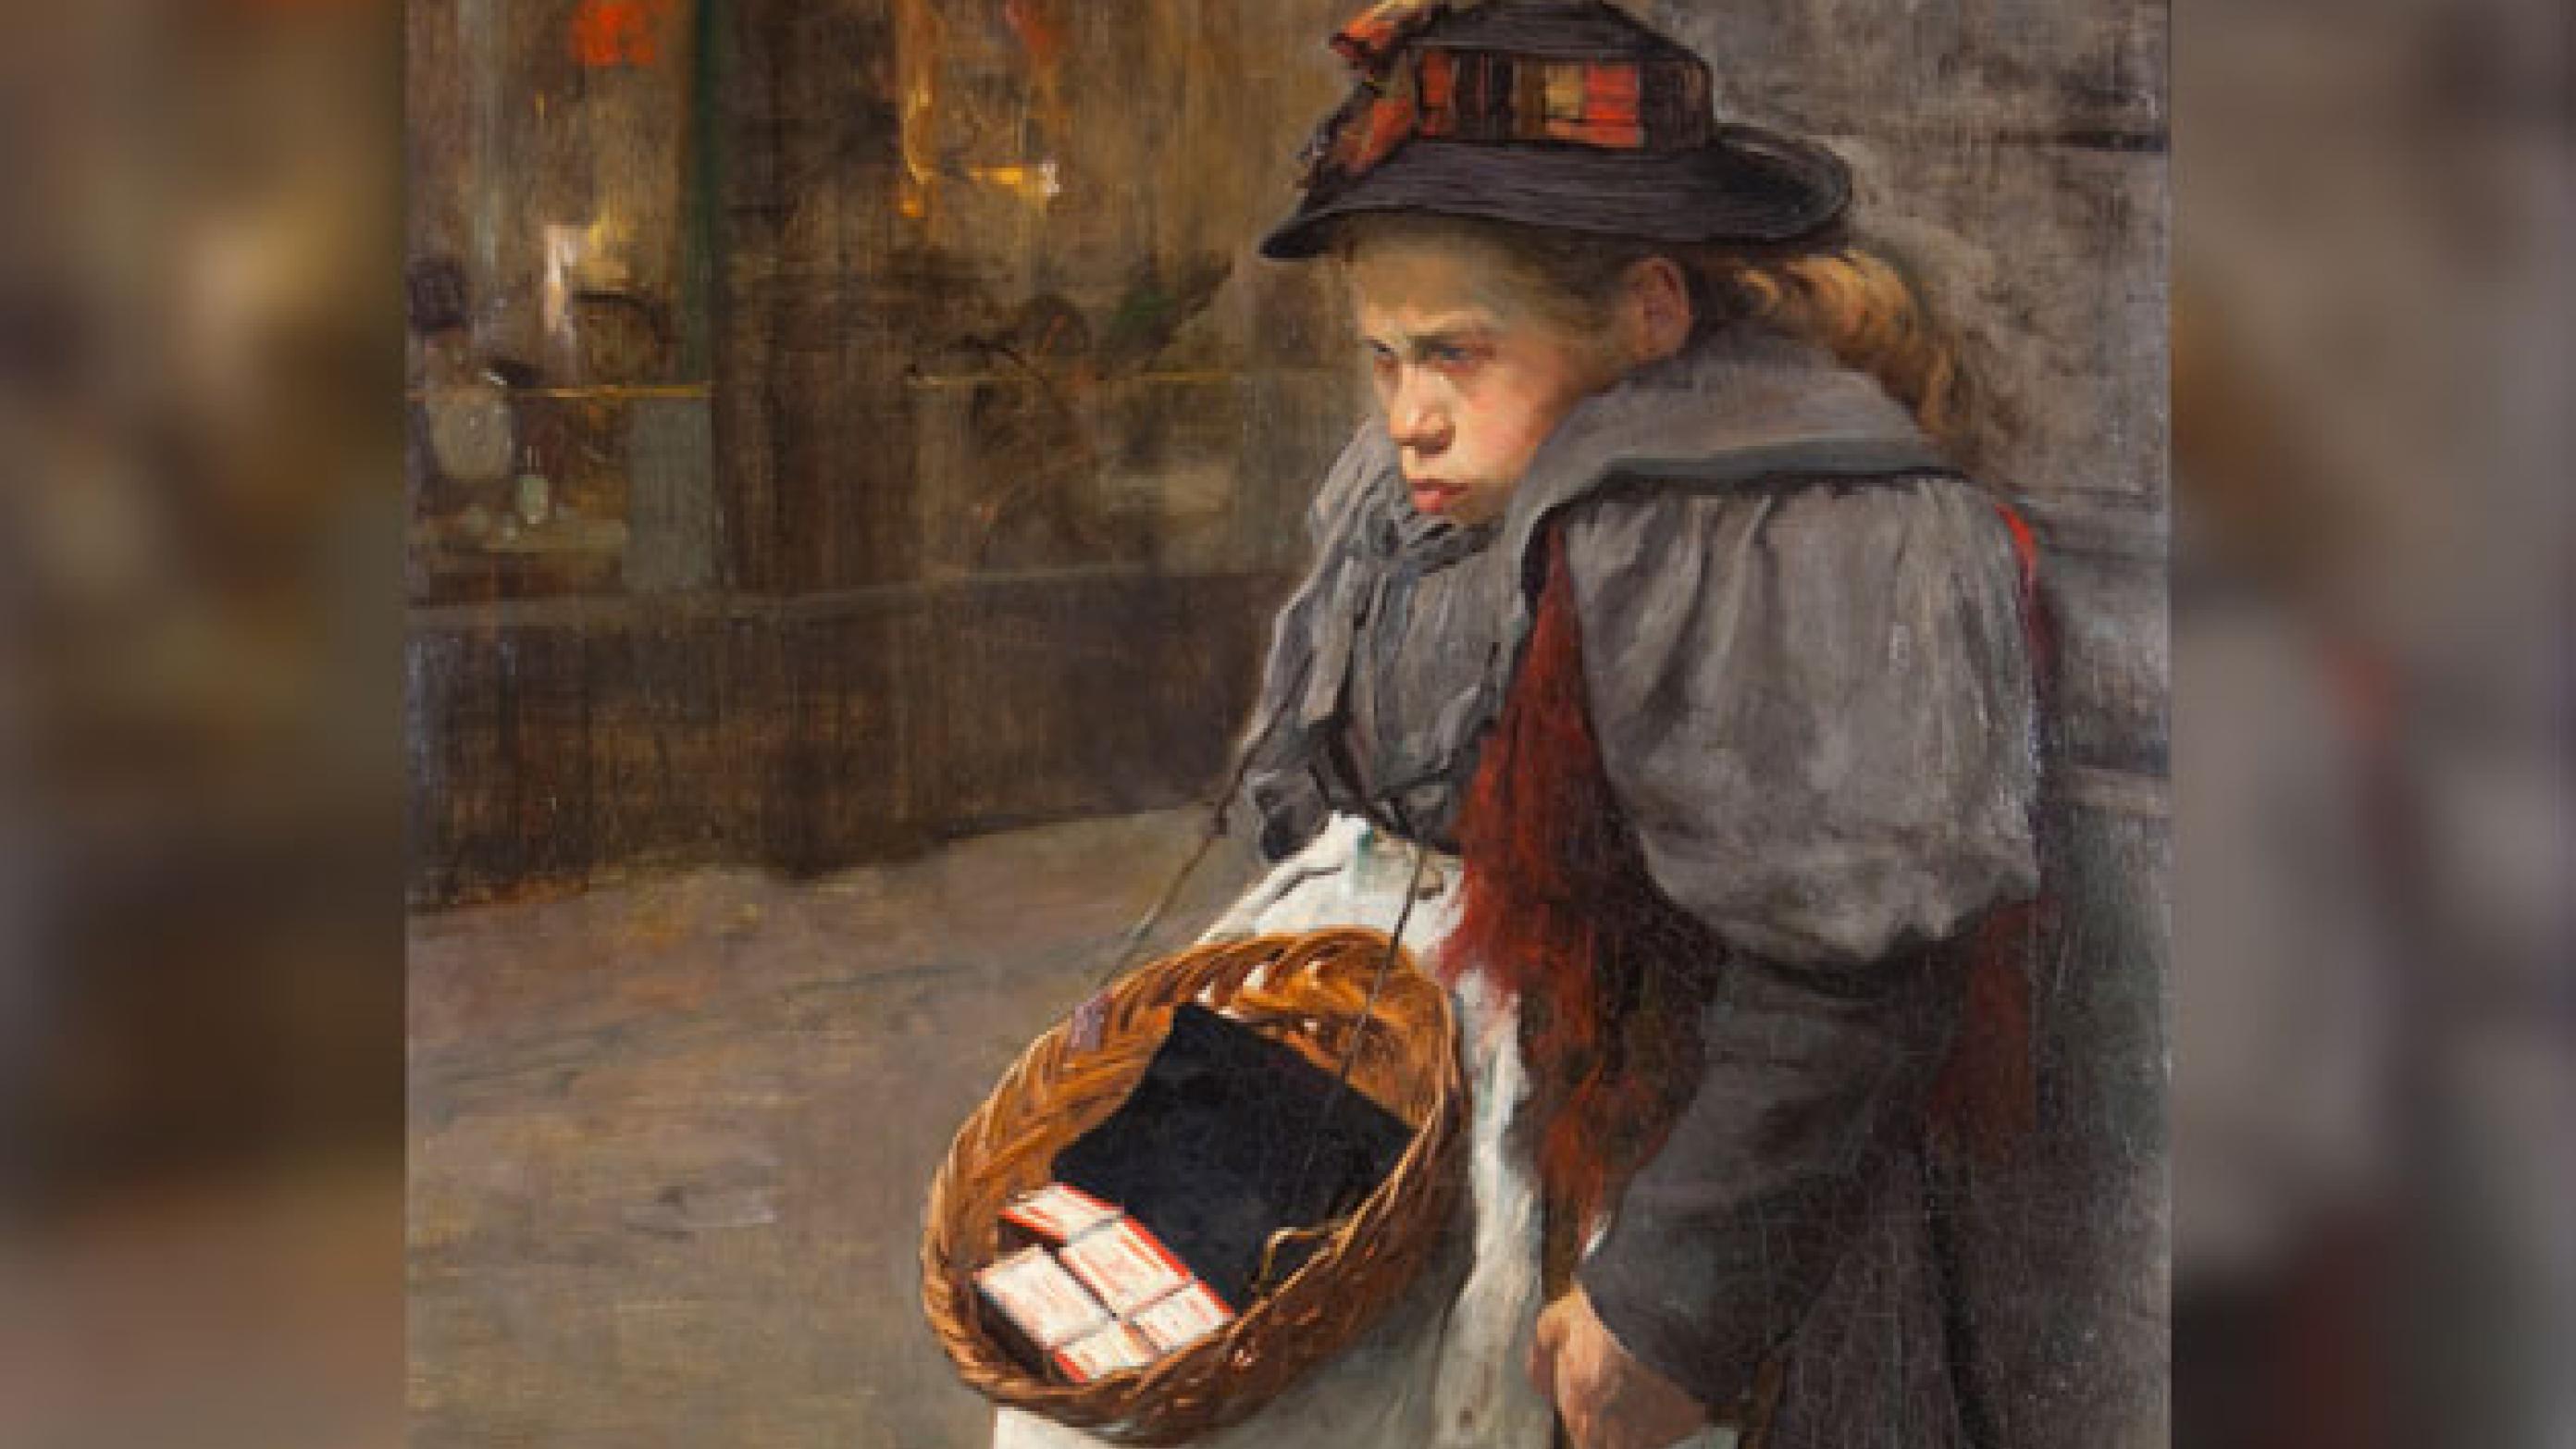 Pigen med tændstikkerne. Maleri af Floris Antzenius, ca. 1900. Haags Historisch Museum. Billede: Wikimedia Commons